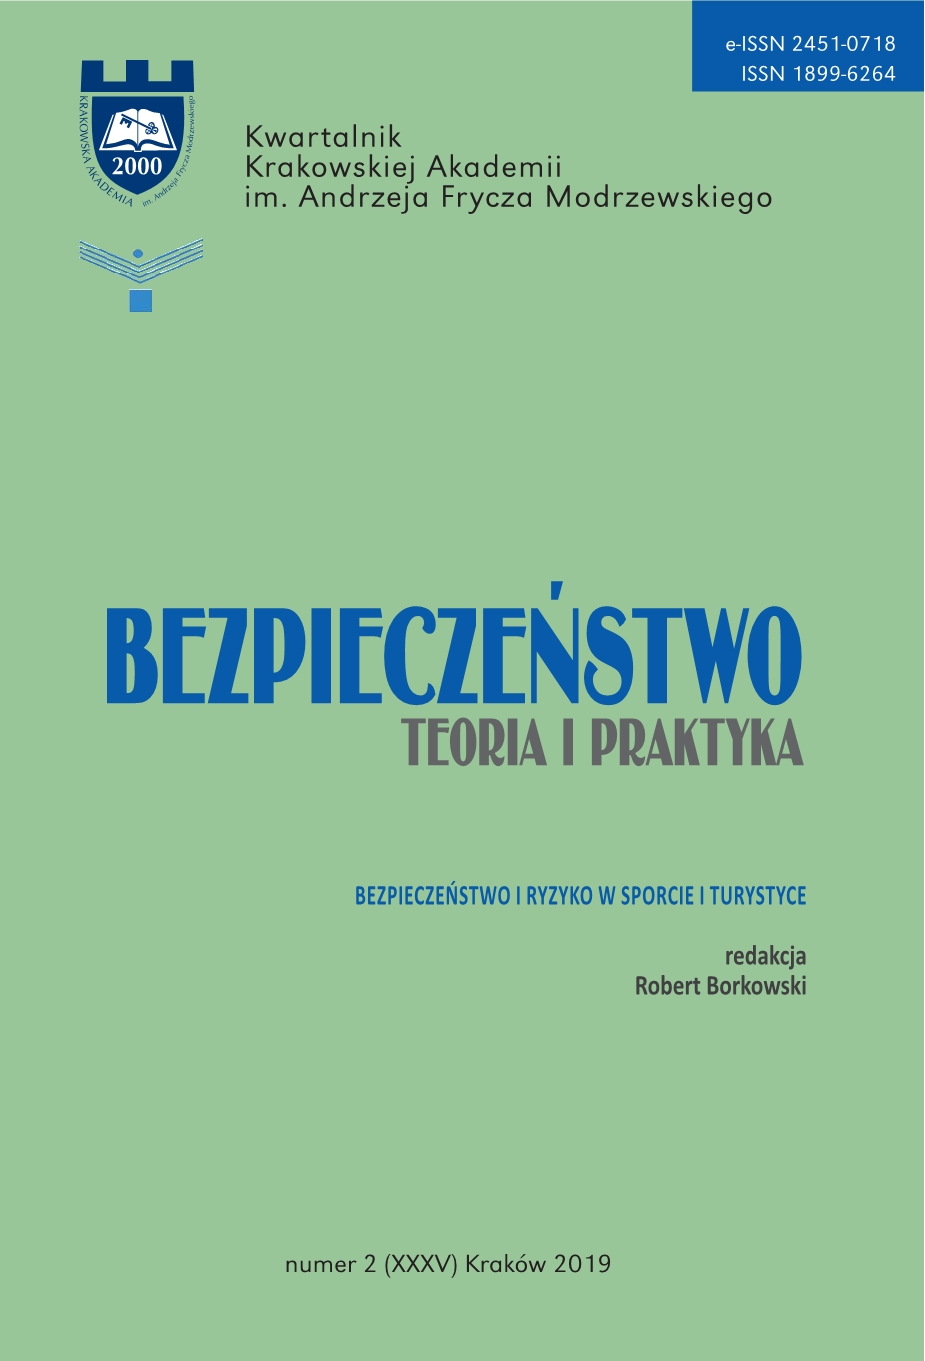 Socjologia sportu, red. Honorata Jakubowska, Przemysław Nosal - book review Cover Image